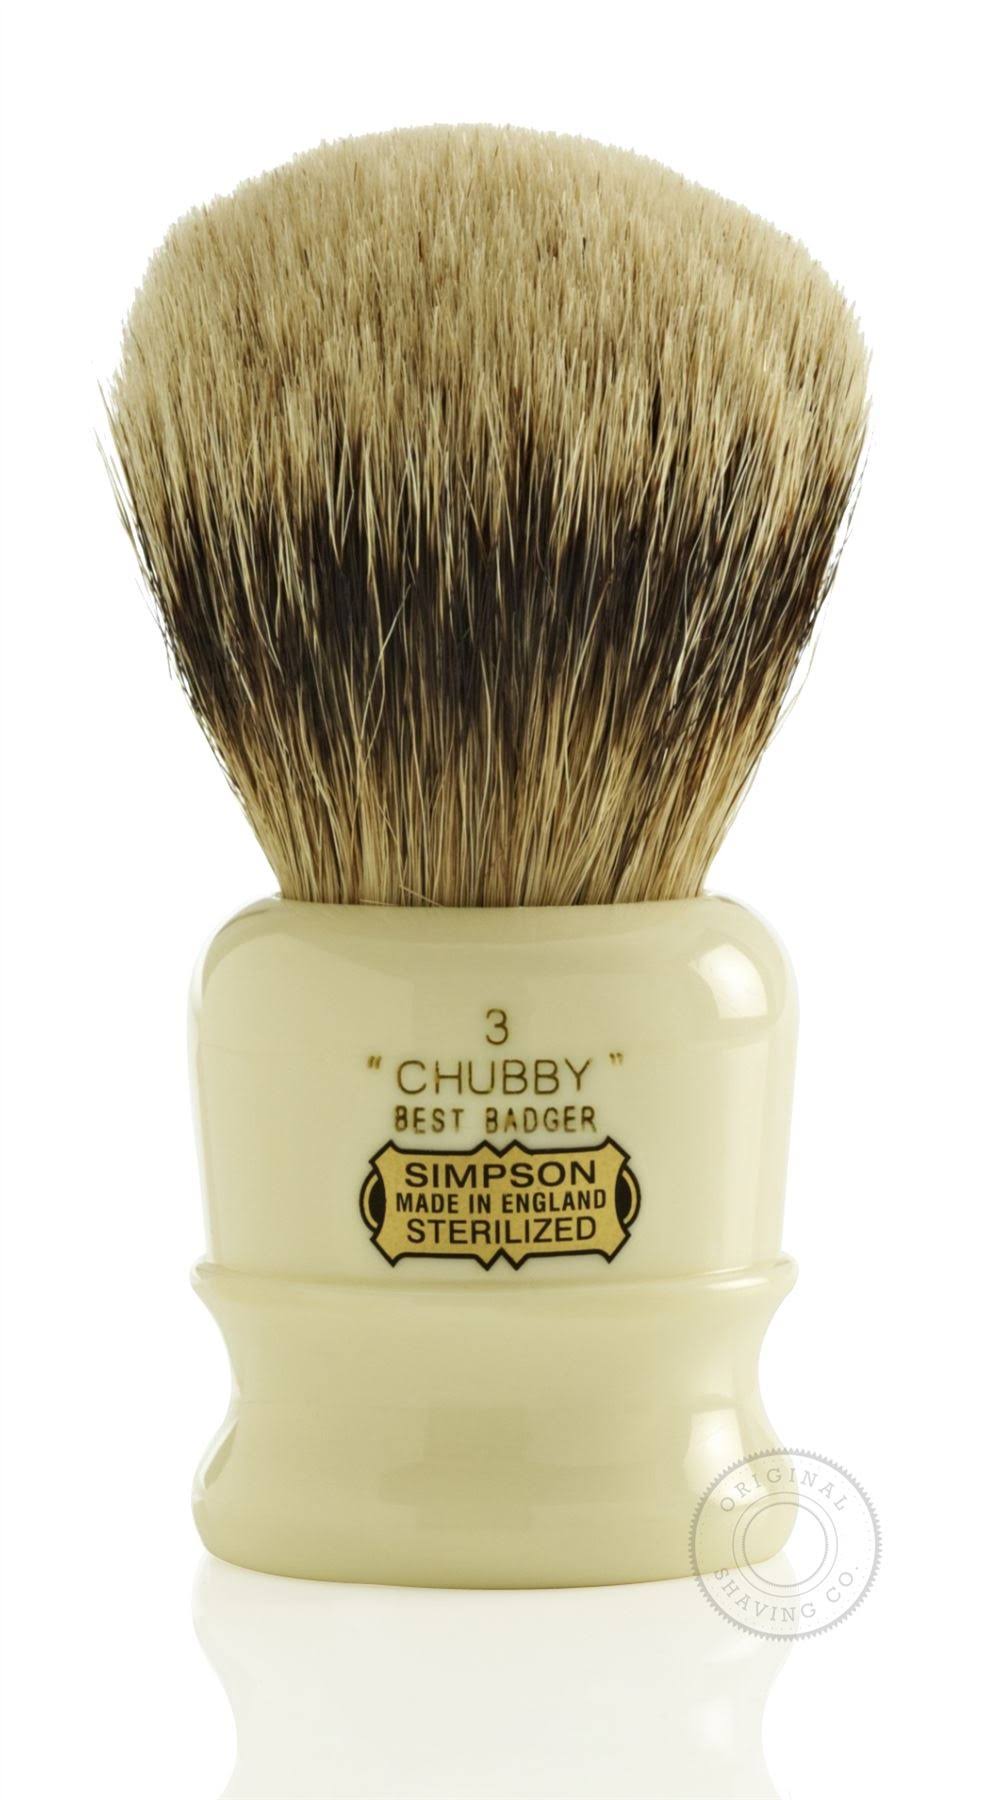 Simpsons Chubby 3 Best Badger Hair Shaving Brush